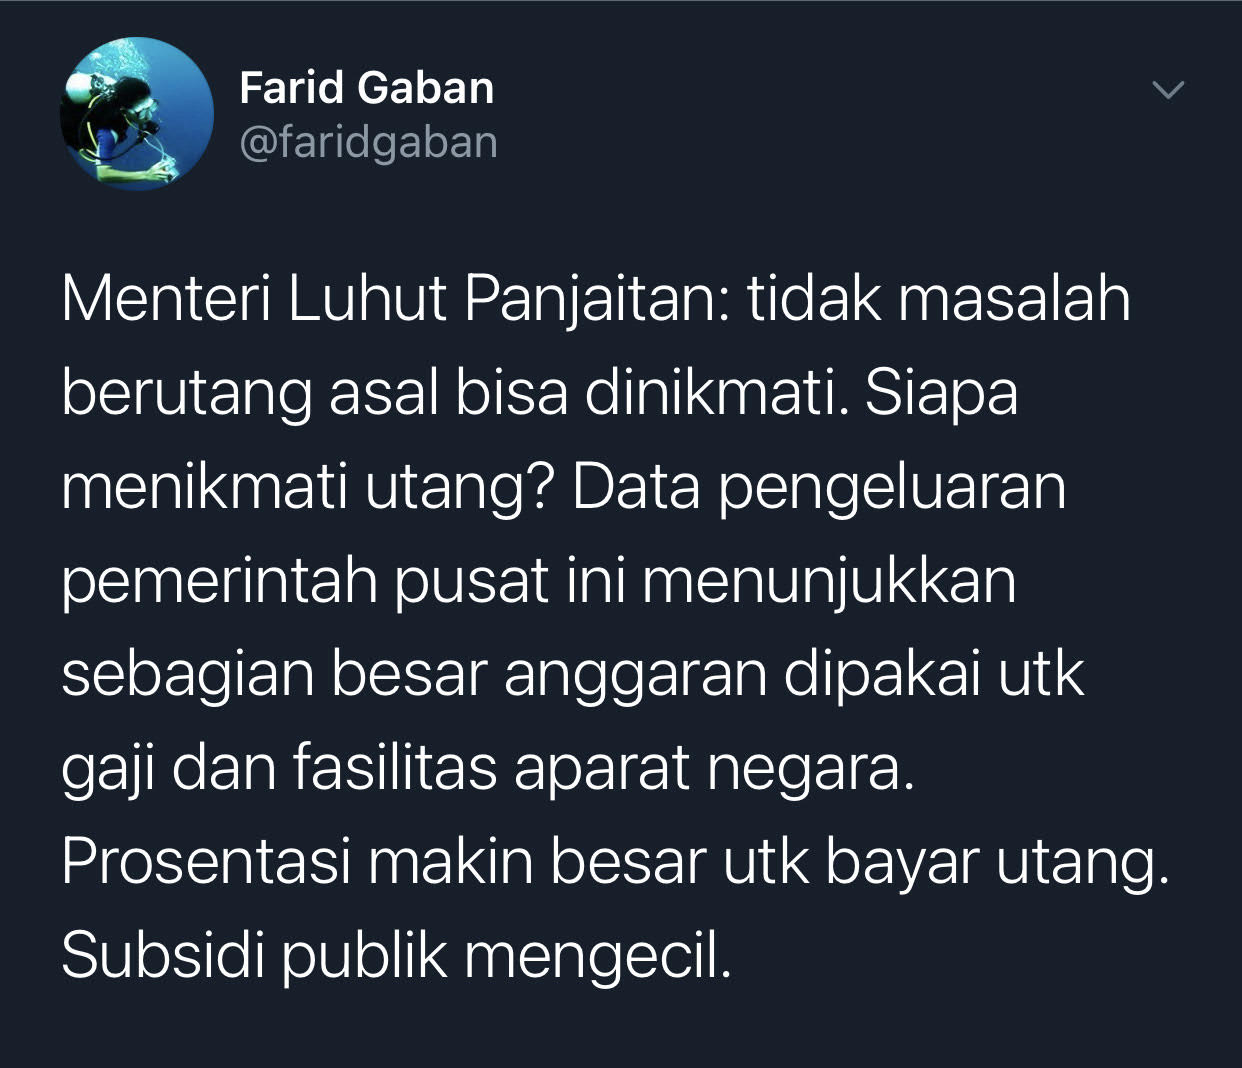 Cuitan Farid Gaban yang mempertanyakan pihak mana yang menikmati utang seperti yang disebutkan Menko Marivest Luhut Binsar Pandjaitan.